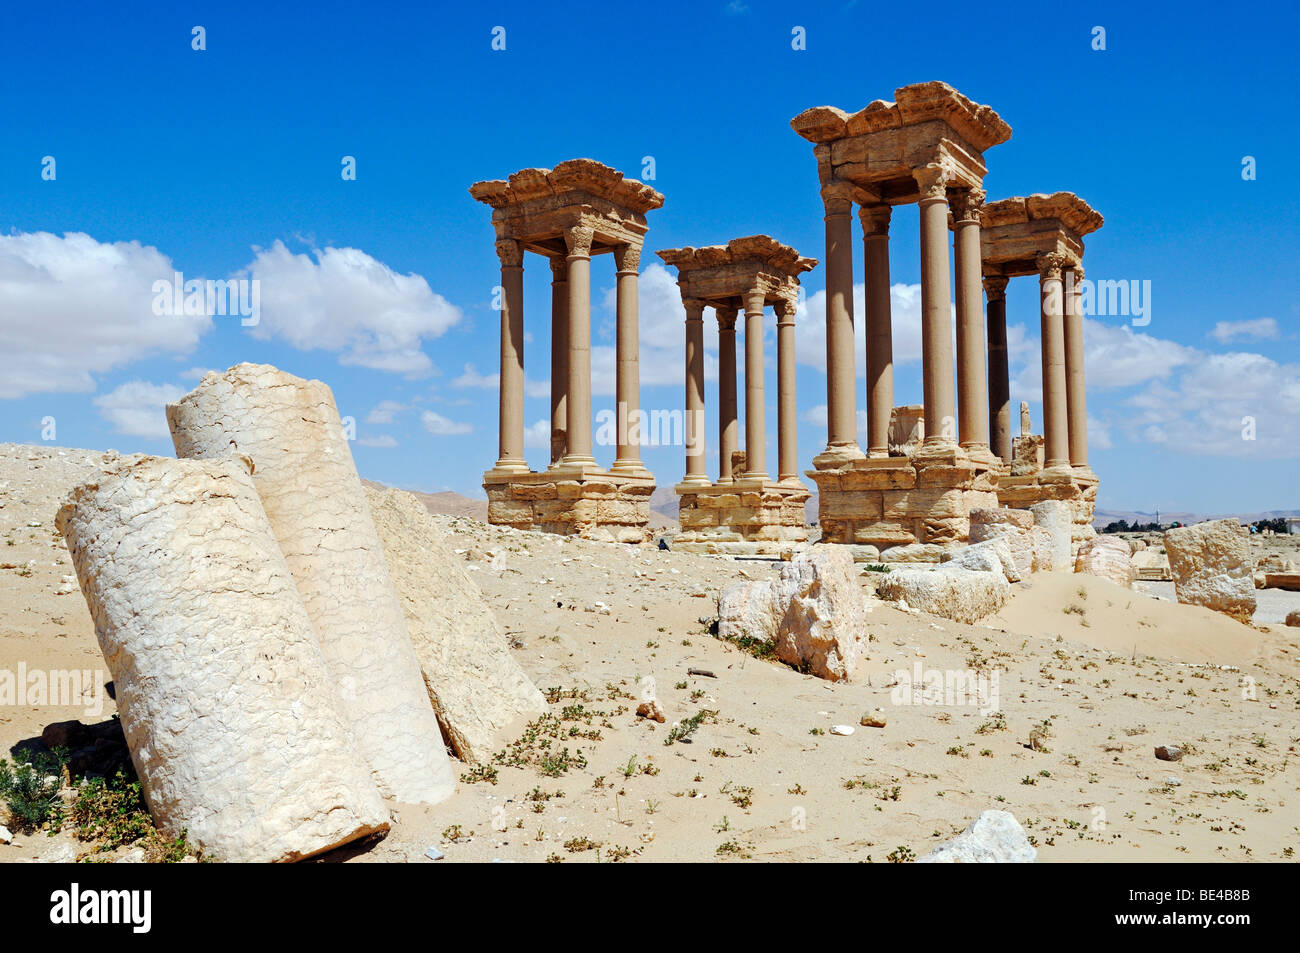 Tetra pilone nelle rovine di Palmyra sito archeologico, Tadmur, Siria, Asia Foto Stock